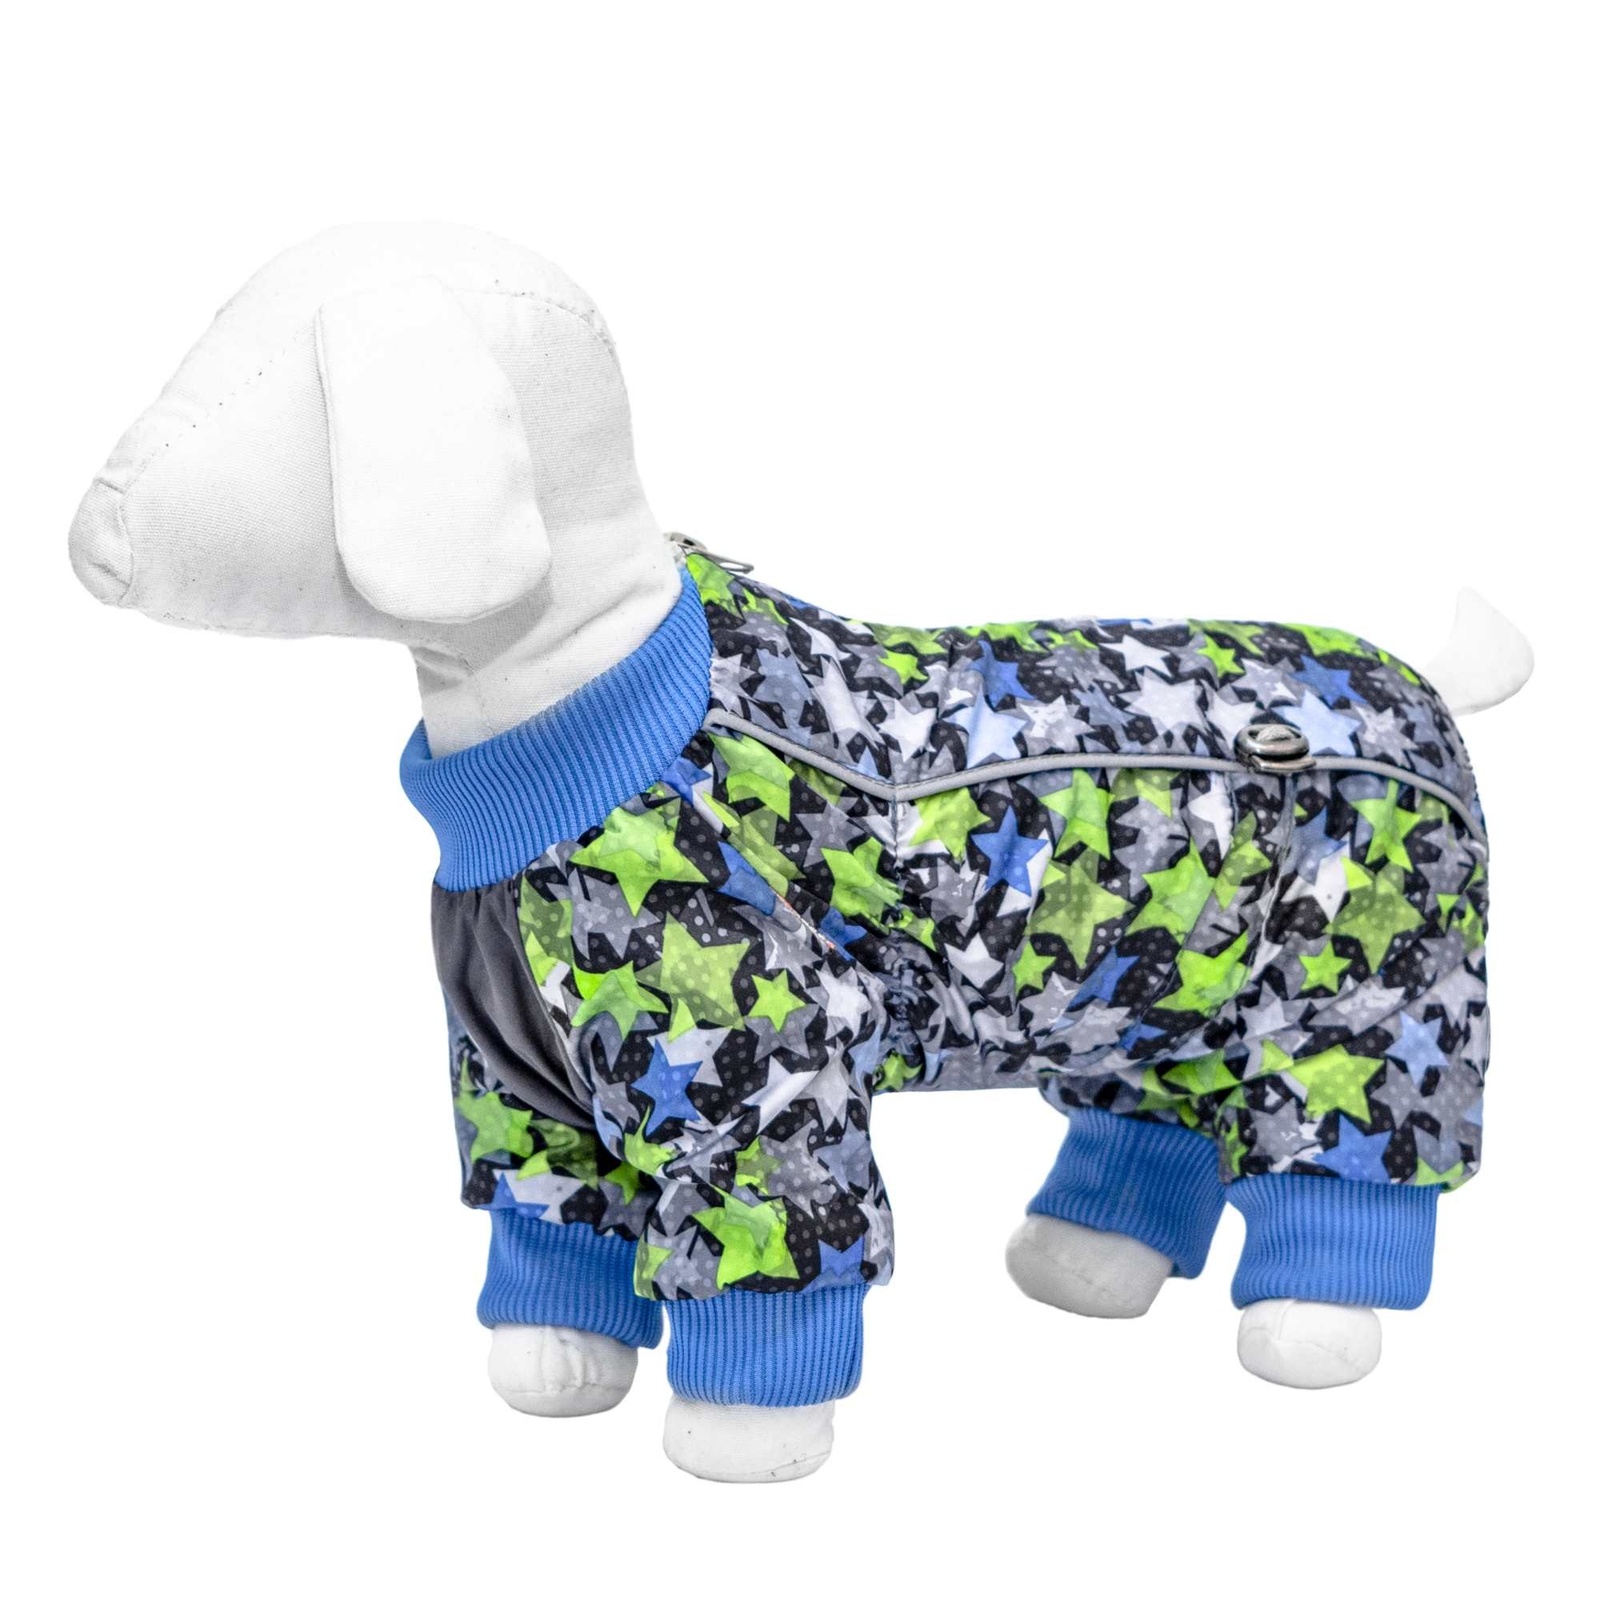 Yami-Yami одежда флисовый комбинезон для собак малых пород, с синими и салатовыми звездами (M) Yami-Yami одежда флисовый комбинезон для собак малых пород, с синими и салатовыми звездами (M) - фото 1